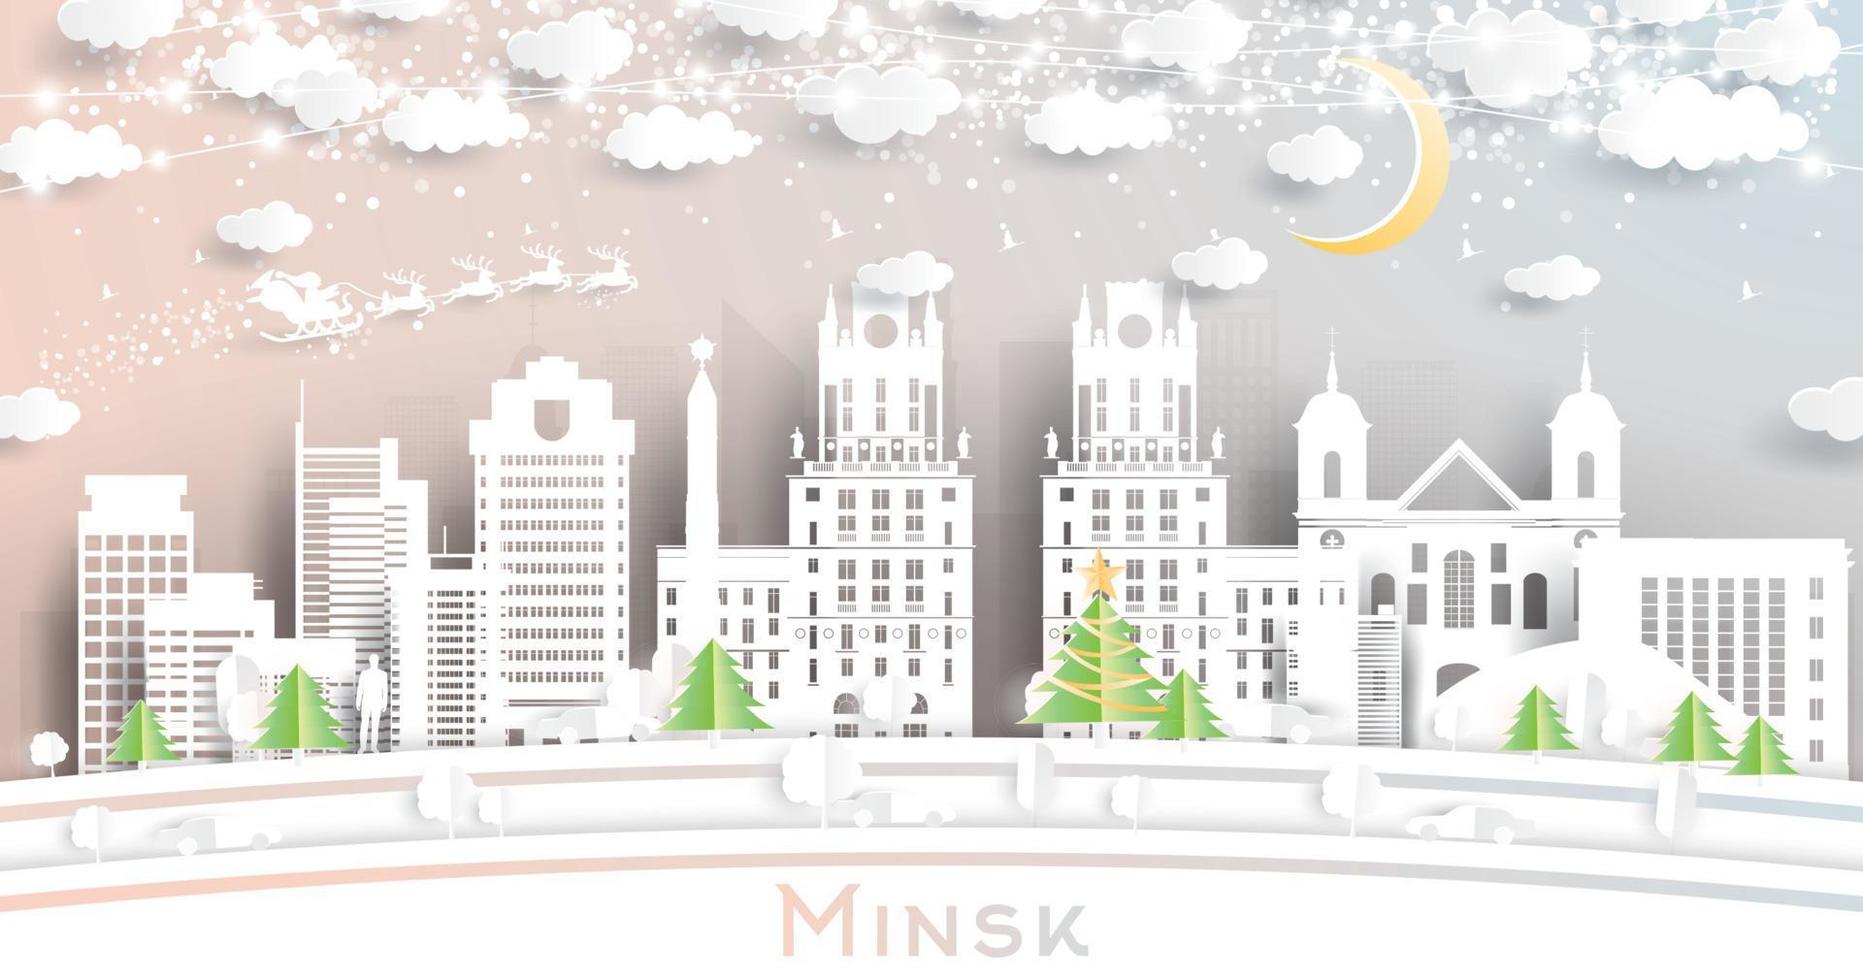 minsk Vitryssland stad horisont i papper skära stil med snöflingor, måne och neon krans. vektor